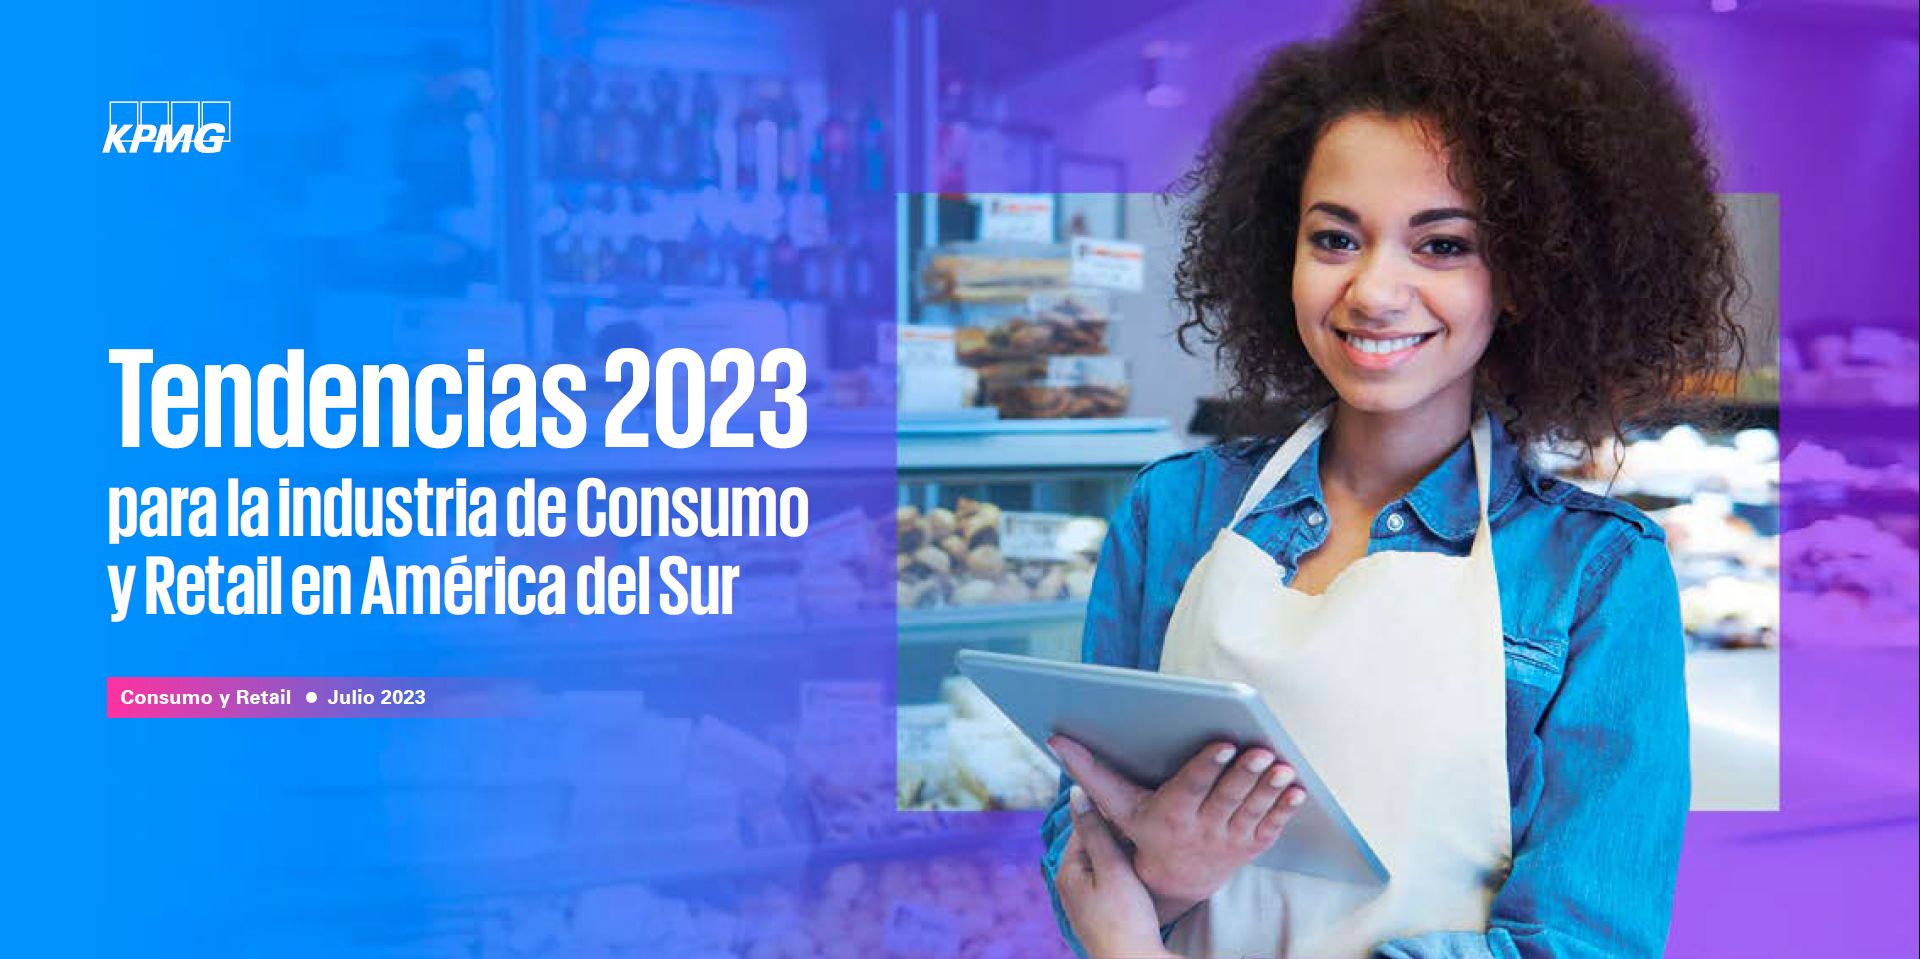 Tendencias 2023 para la industria de Consumo y Retail en América del Sur